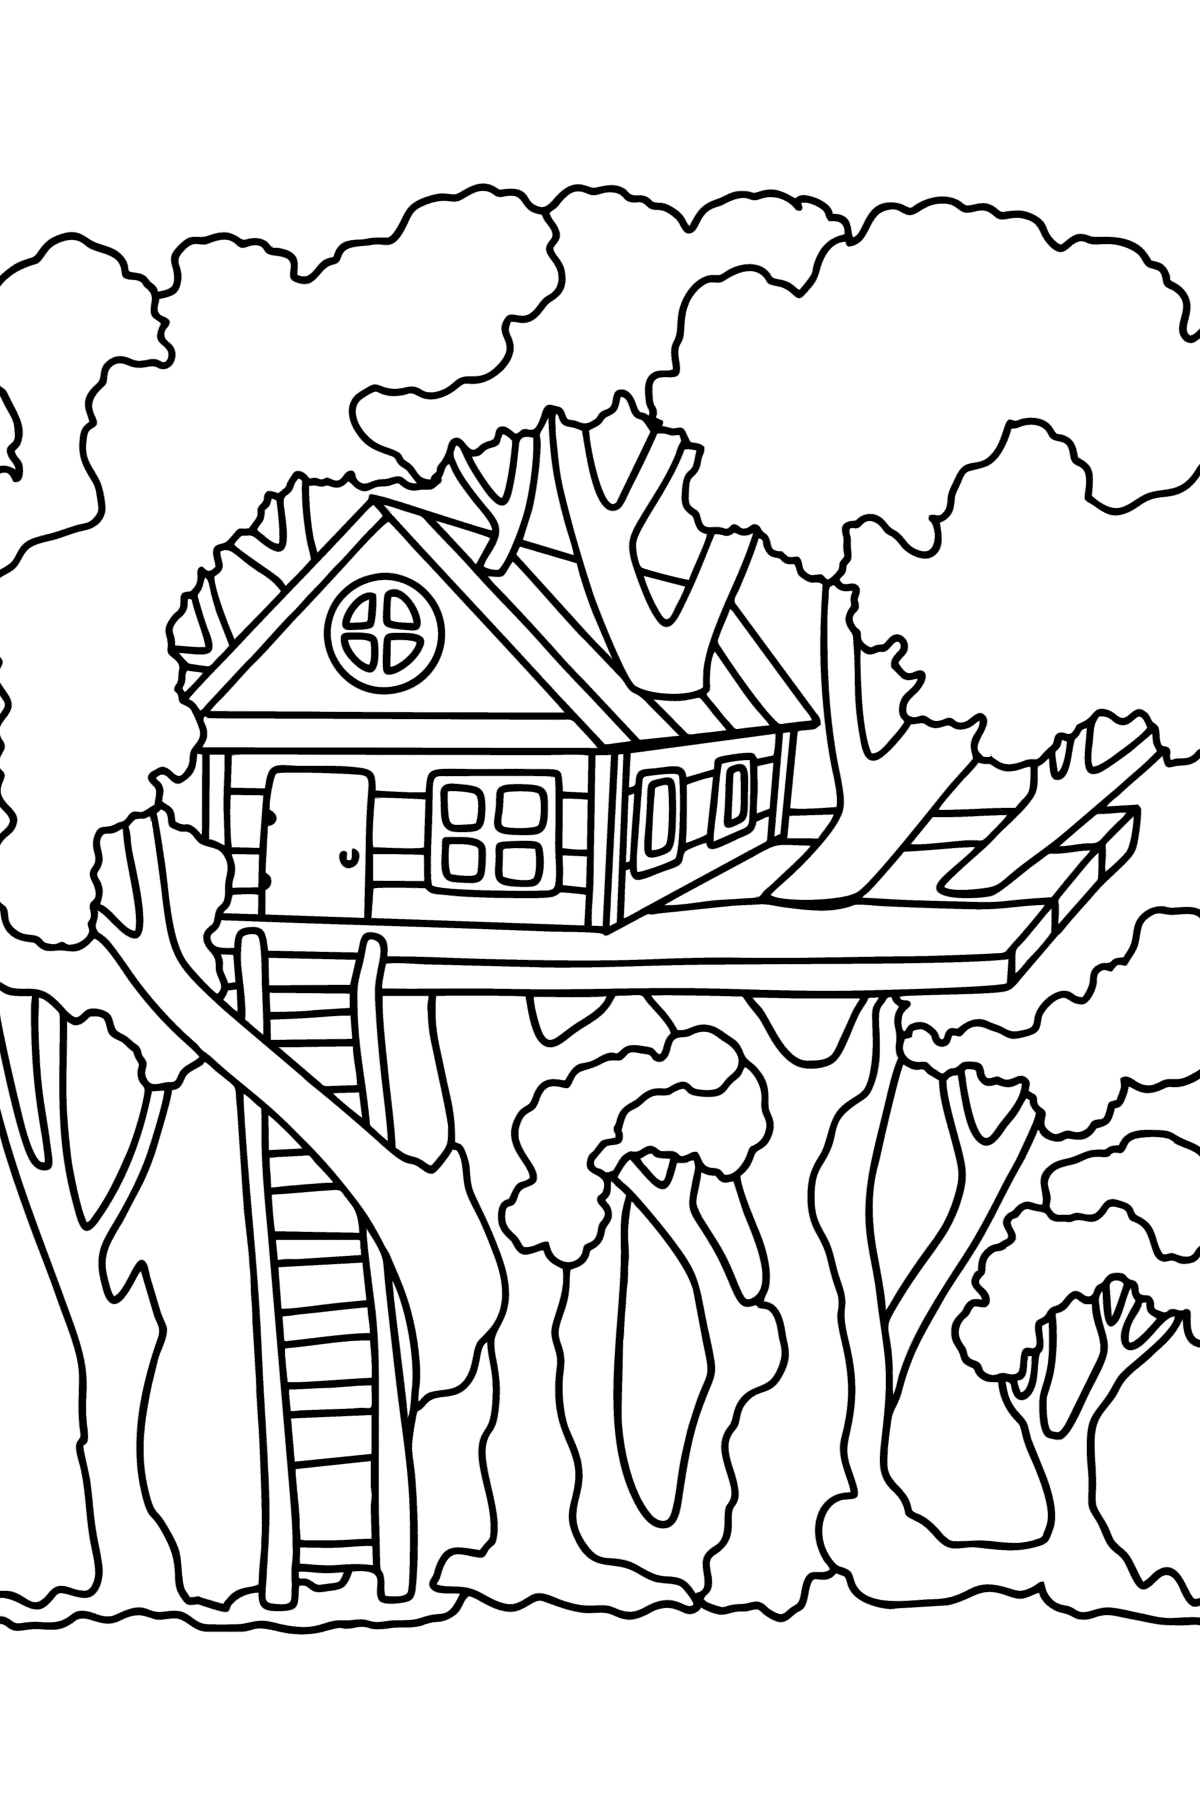 Målarbild hus på ett träd - Målarbilder För barn